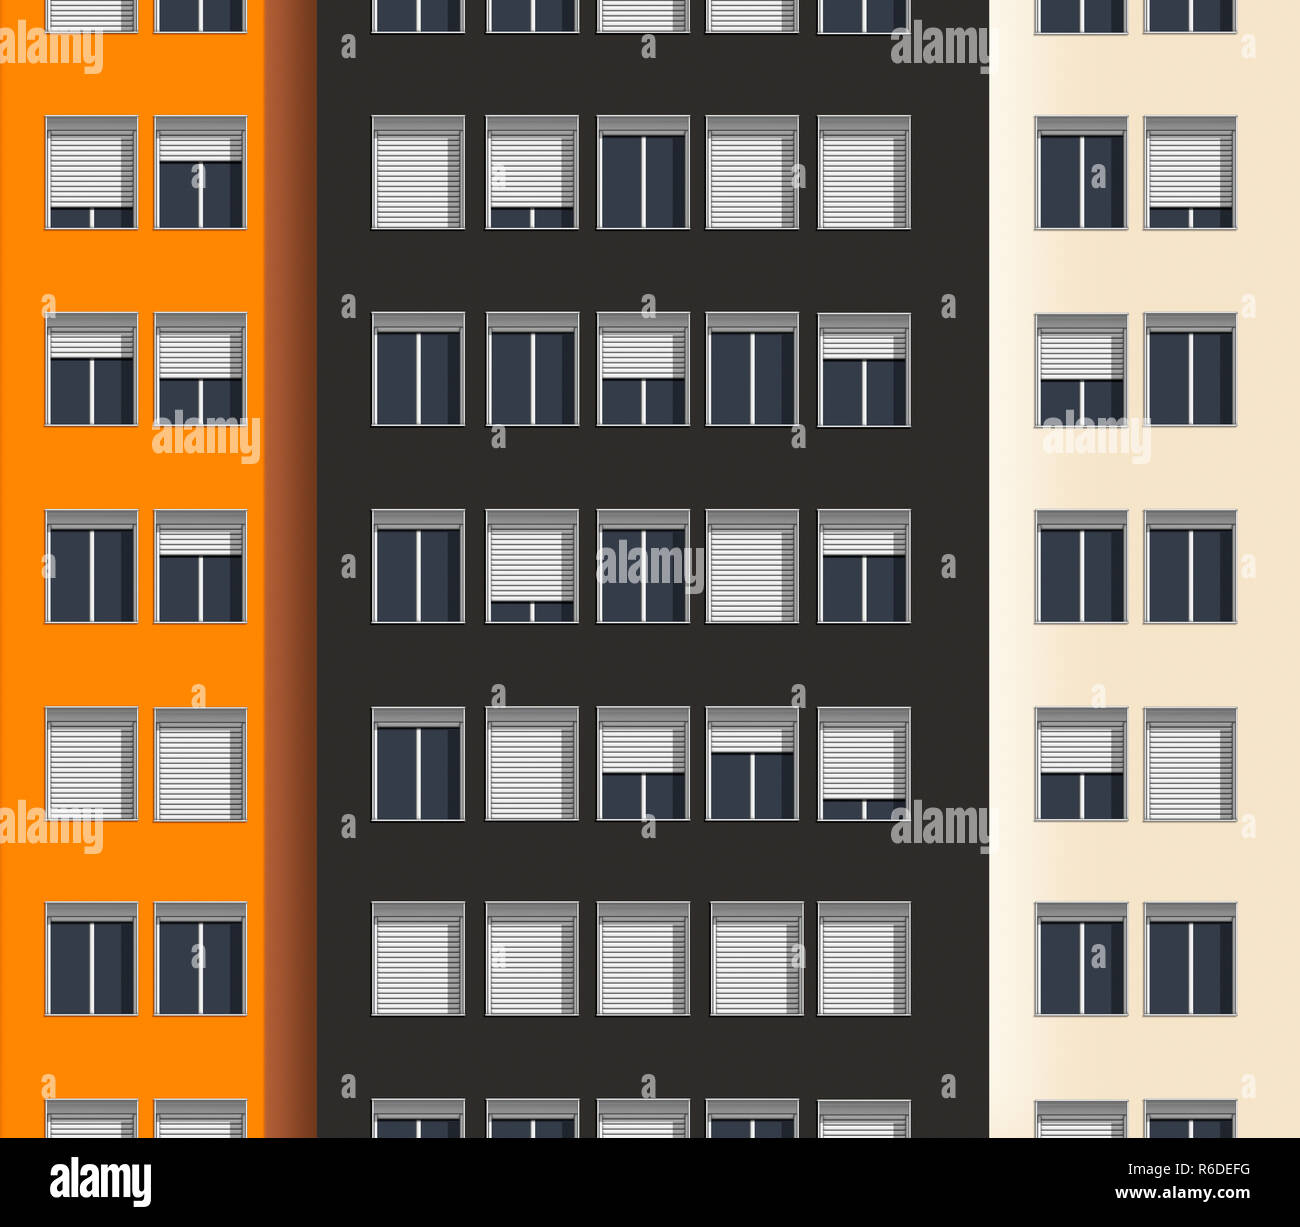 Chiudere l'immagine digitale di city apartment block con persiane in Windows, aprire parzialmente aperto o chiuso Foto Stock